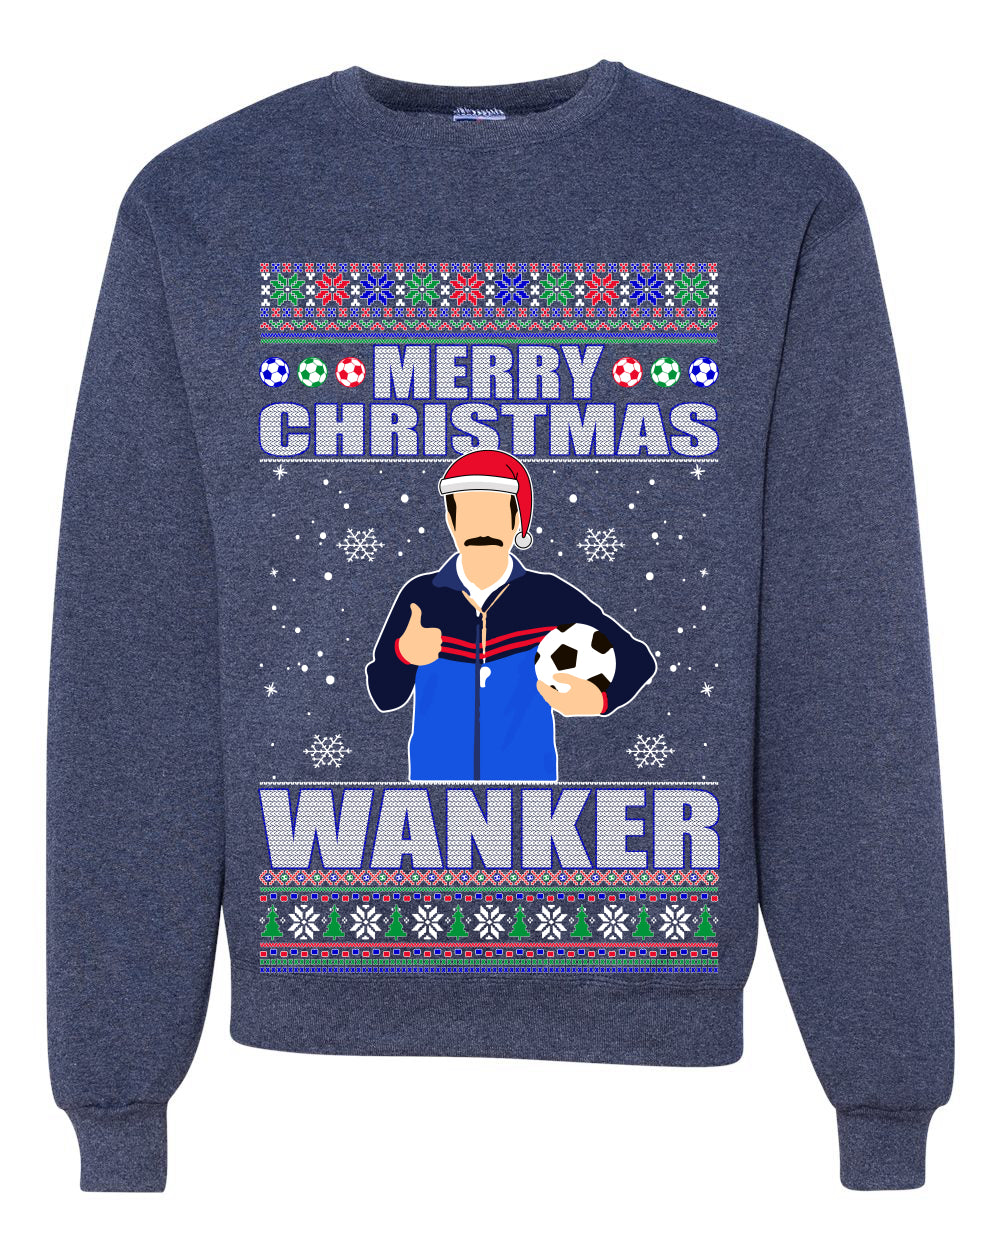 Ted Merry Christmas Wanker Ugly Christmas Sweater Unisex Crewneck Graphic Sweatshirt